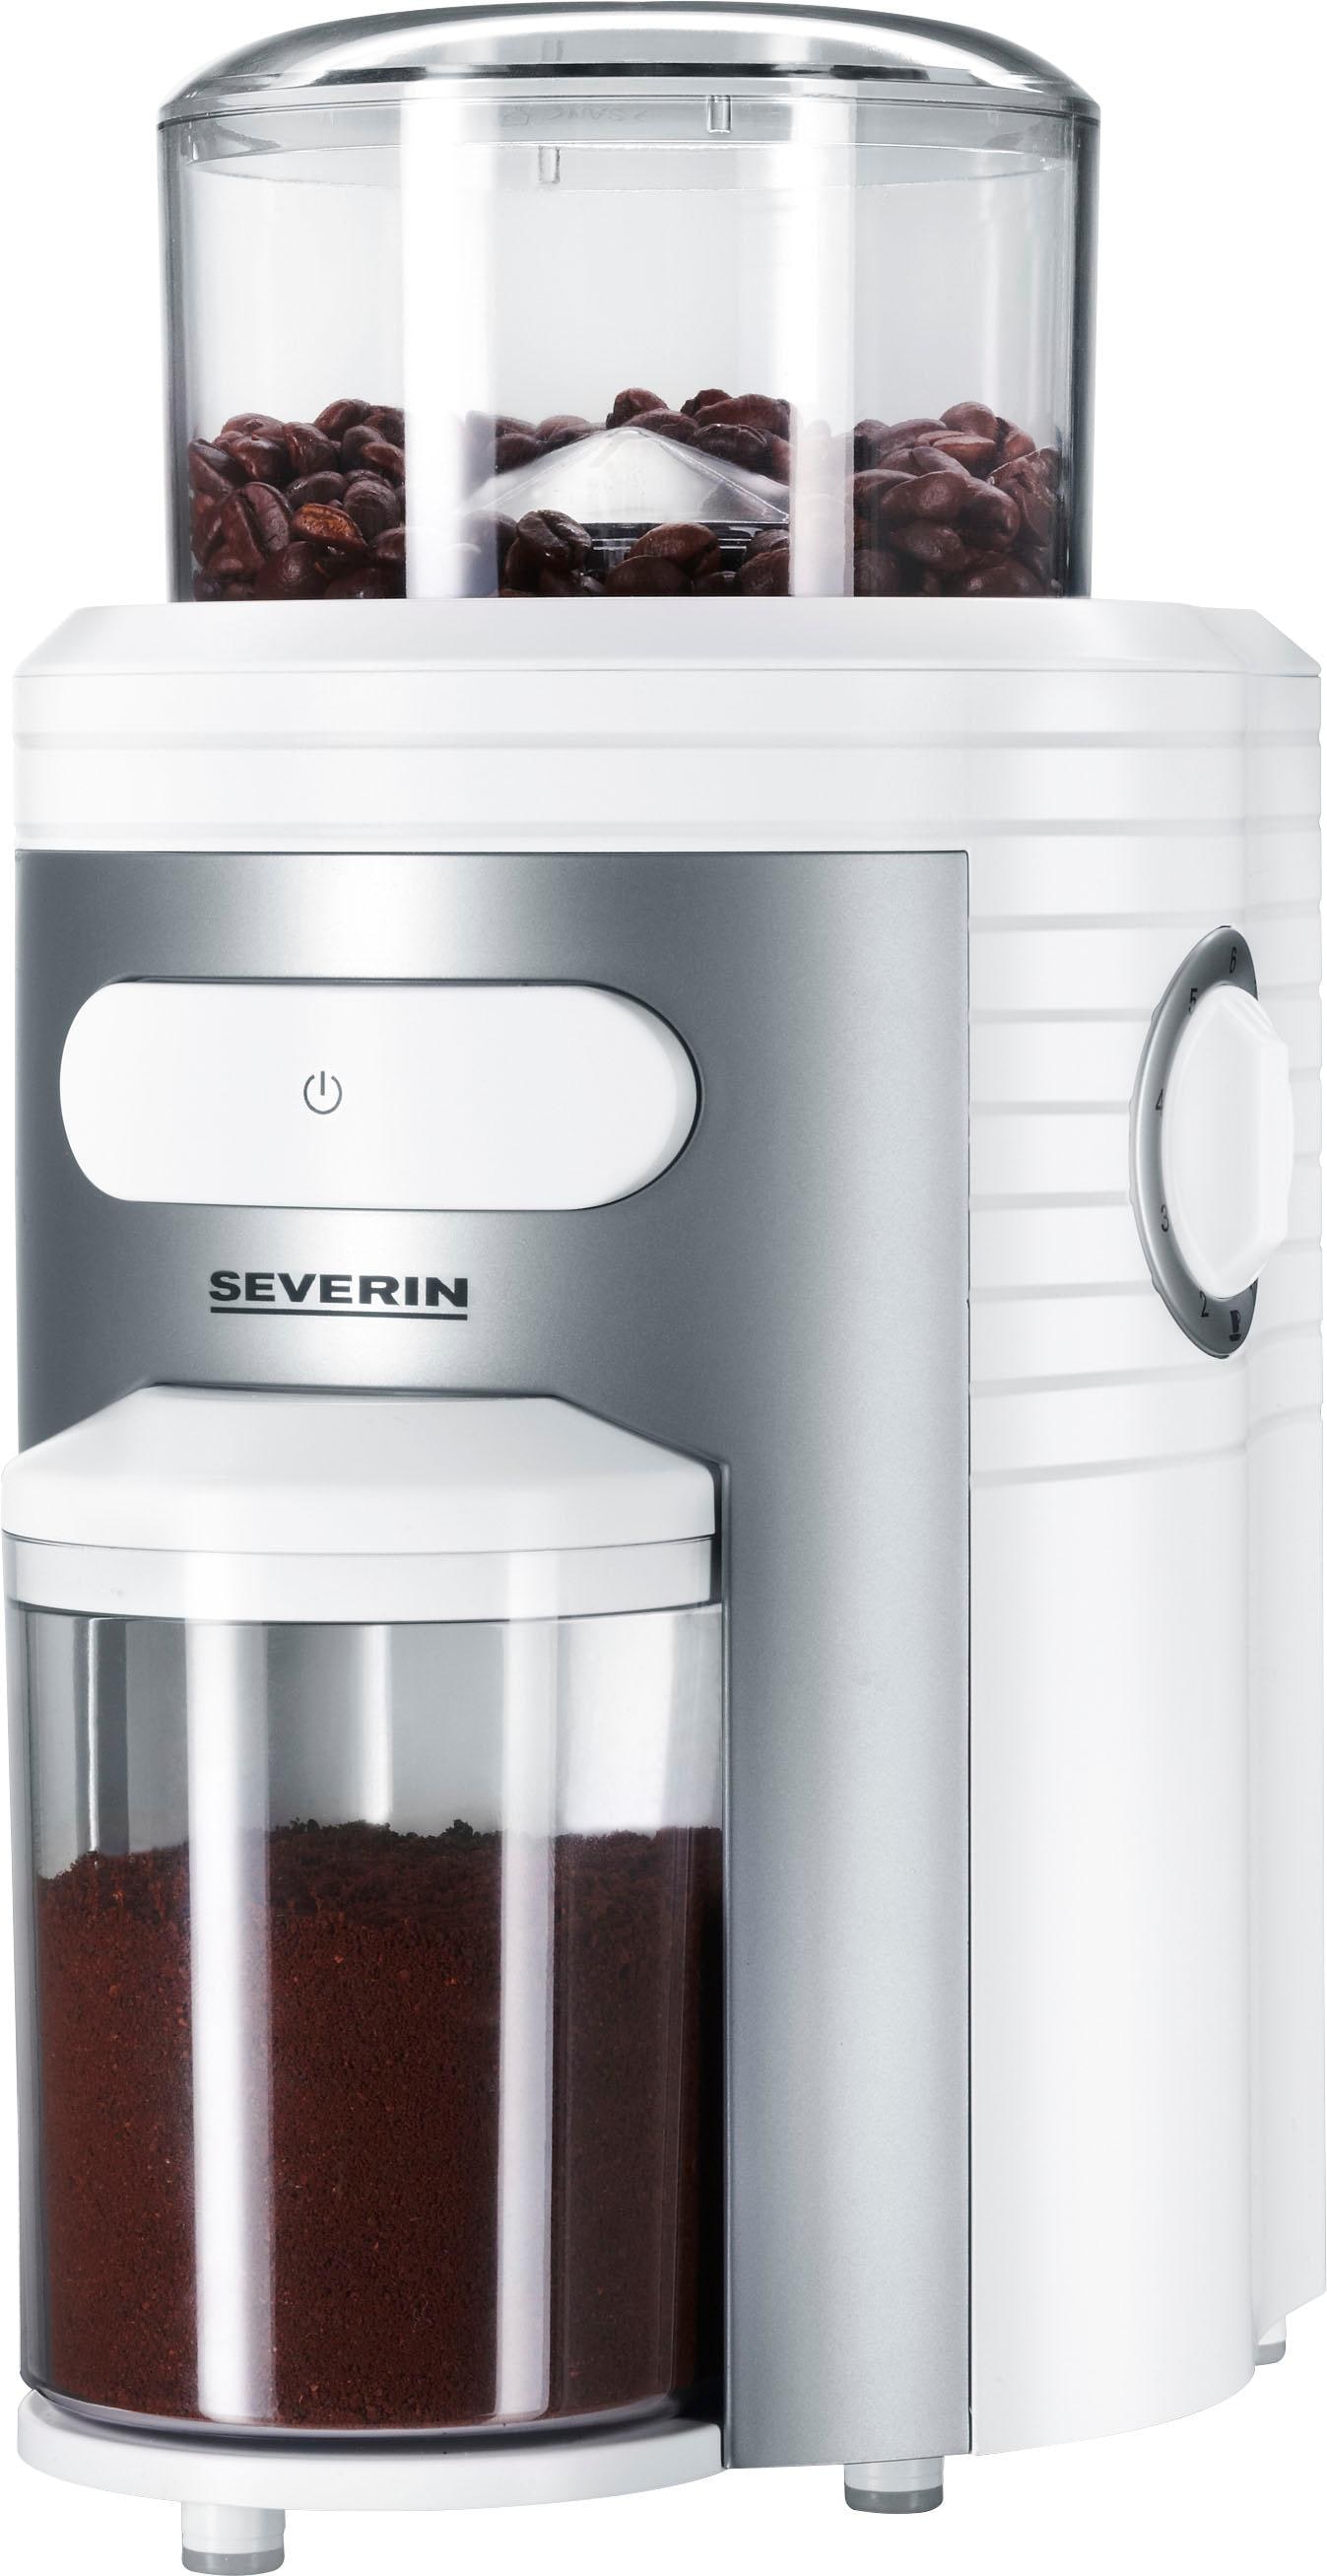 Severin Kaffeemühle »KM 3873«, 150 W, Kegelmahlwerk, 150 g Bohnenbehälter  jetzt im OTTO Online Shop